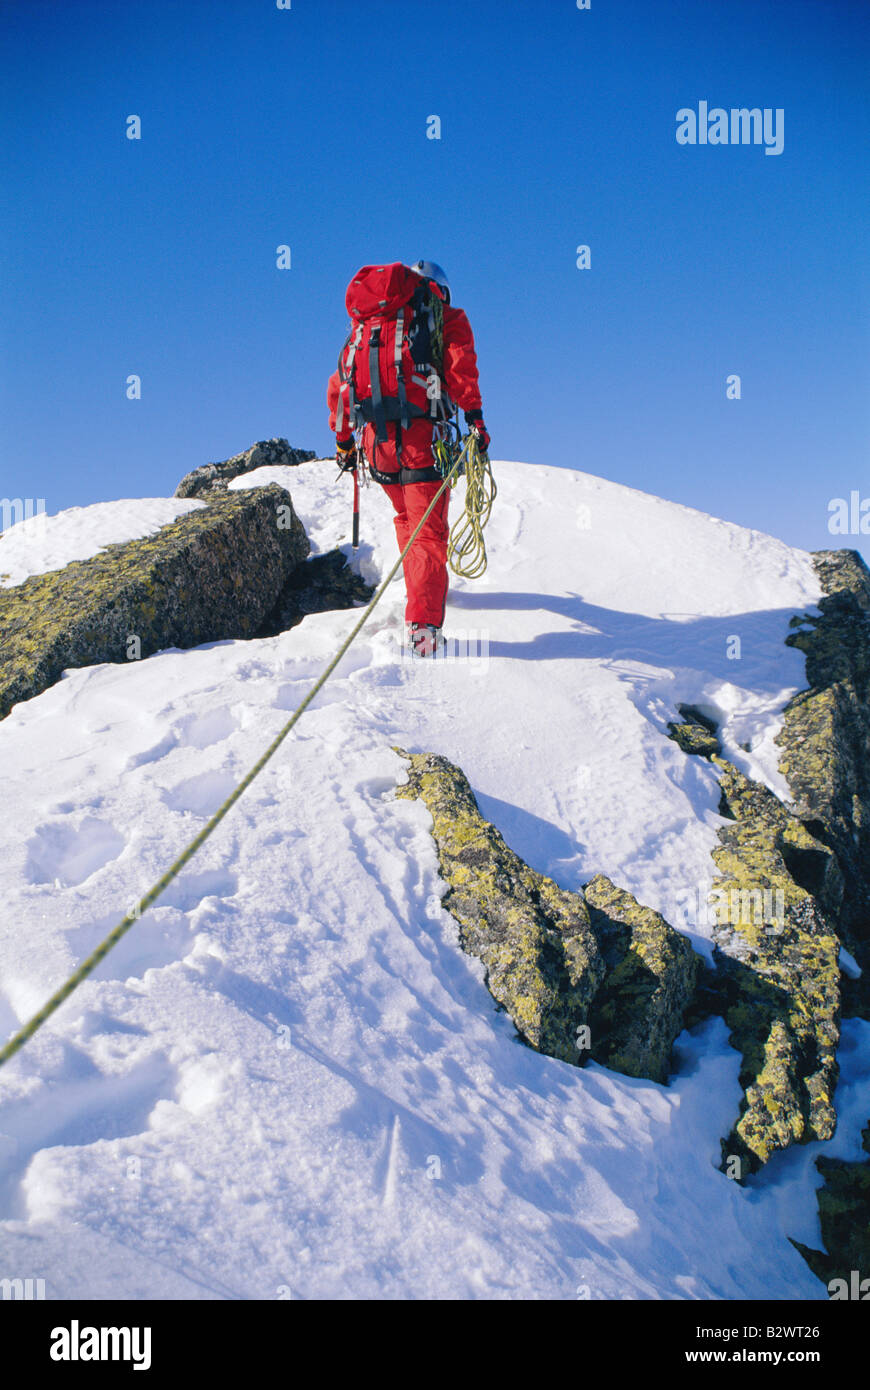 Mountain climber walking on snowy mountain Stock Photo